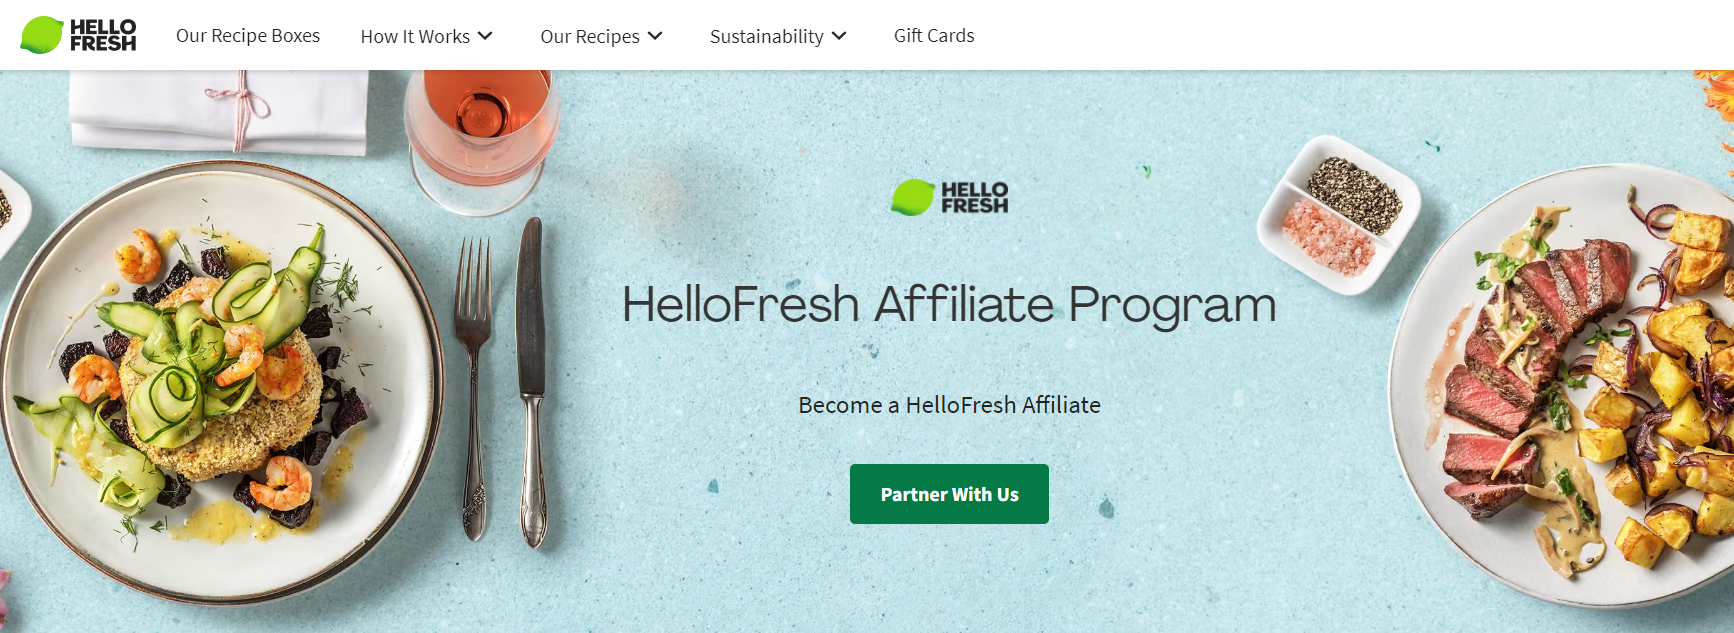 Hello Fresh affiliate program